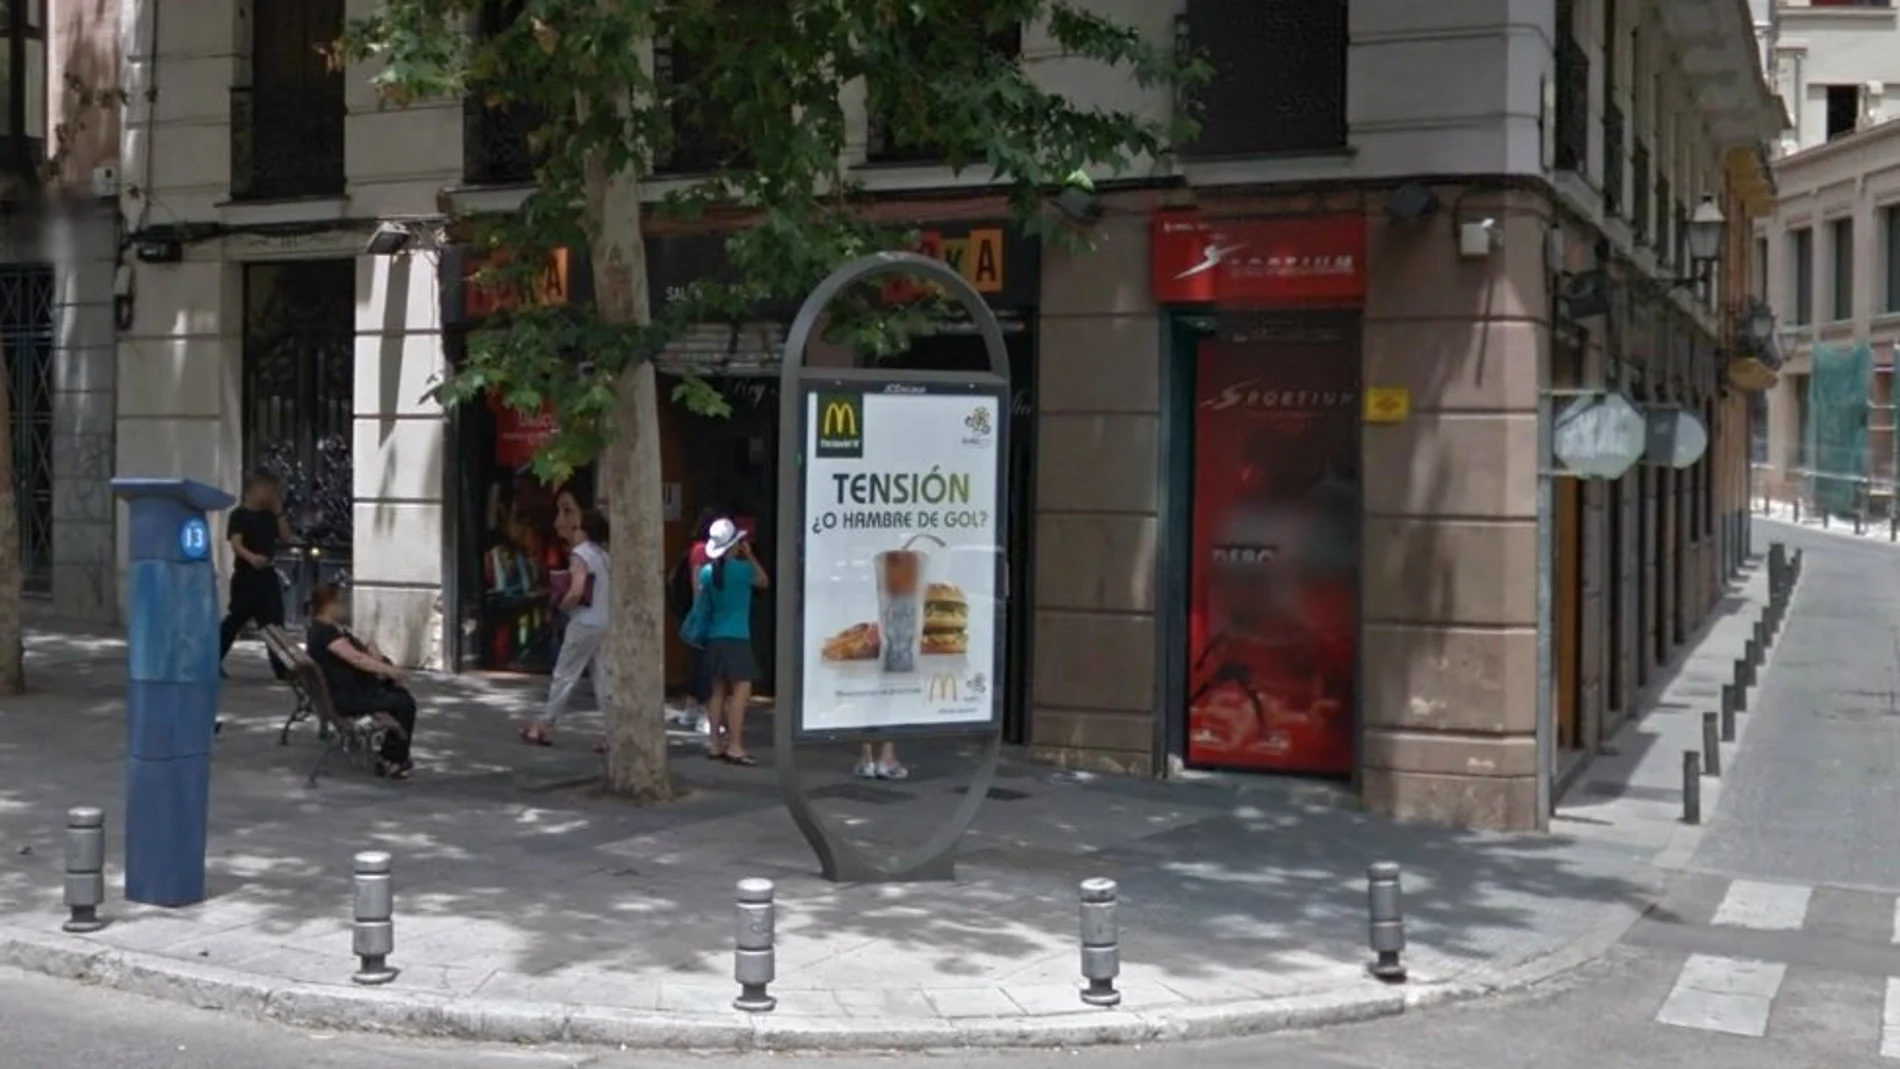 Local de apuestas en Madrid